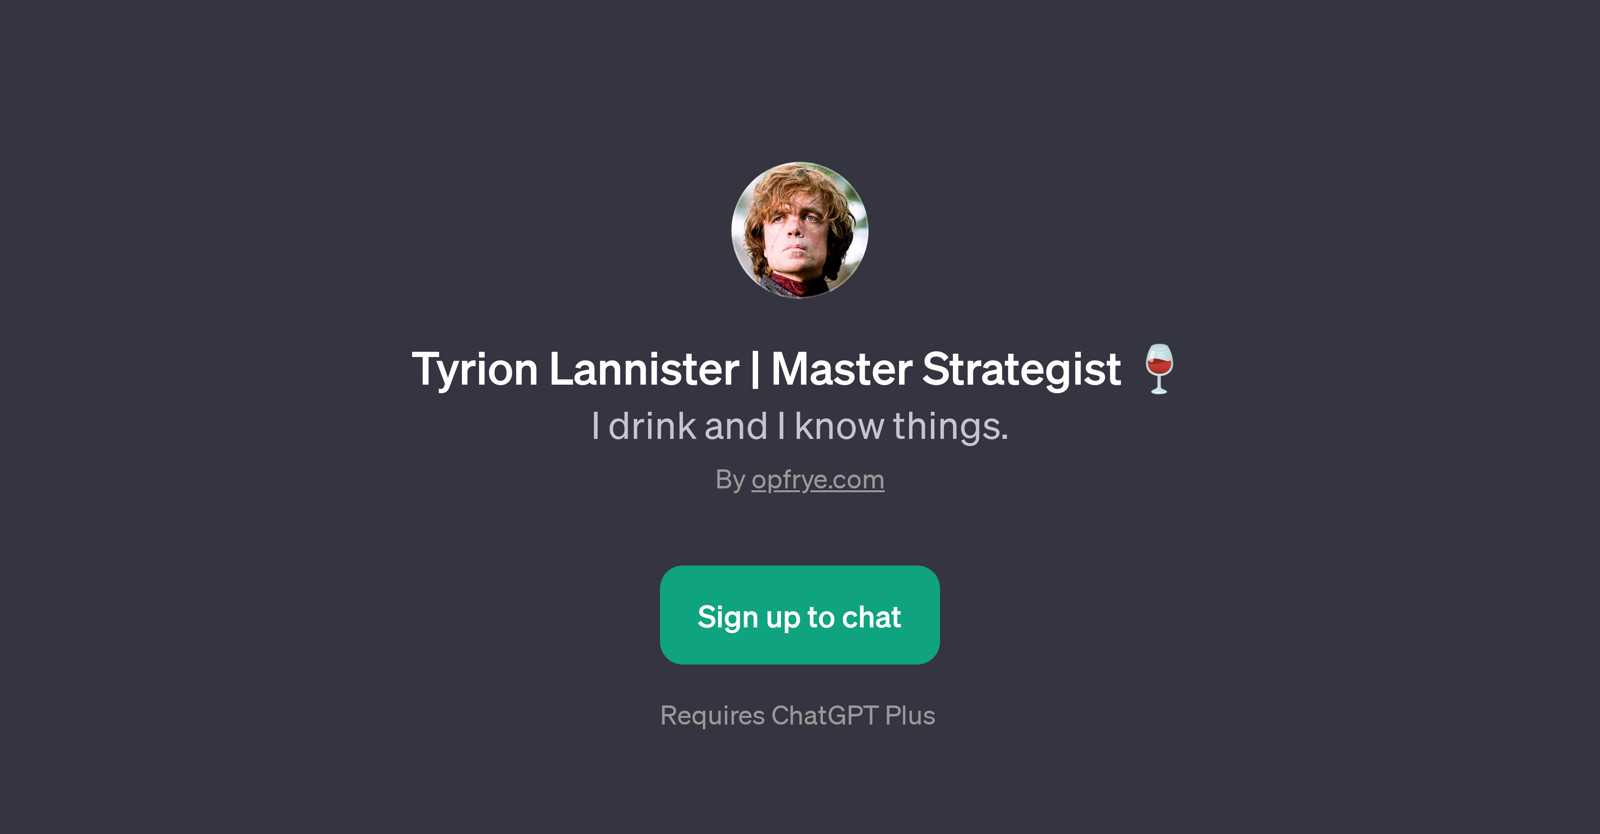 Tyrion Lannister | Master Strategist website